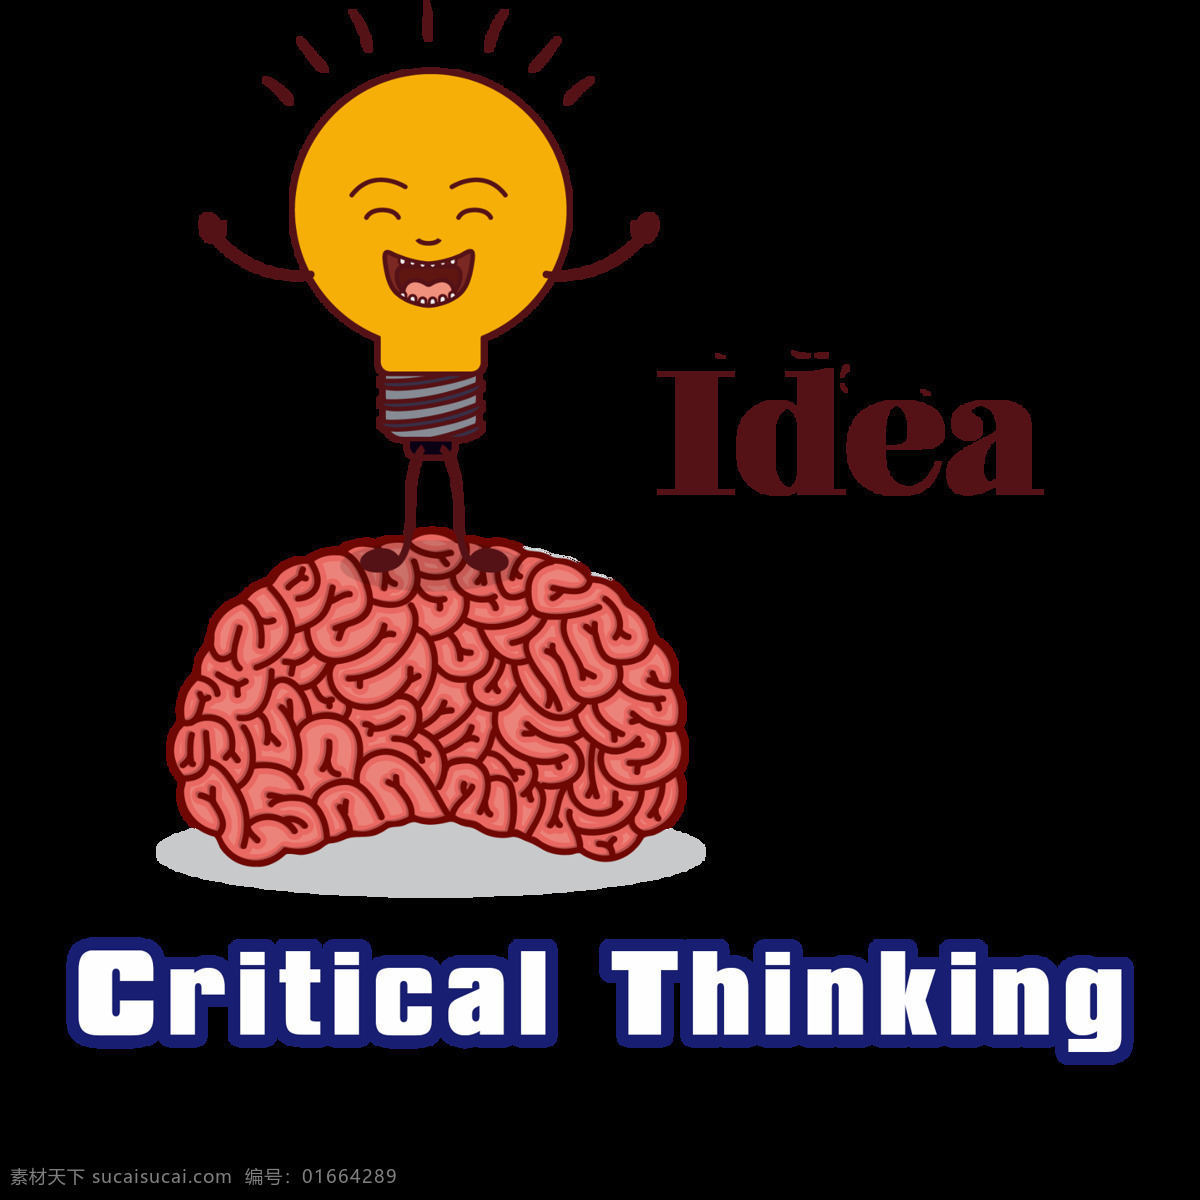 逆向思维 逆向四维图片 critical thinking 思维图 大脑 灯泡 标志图标 公共标识标志